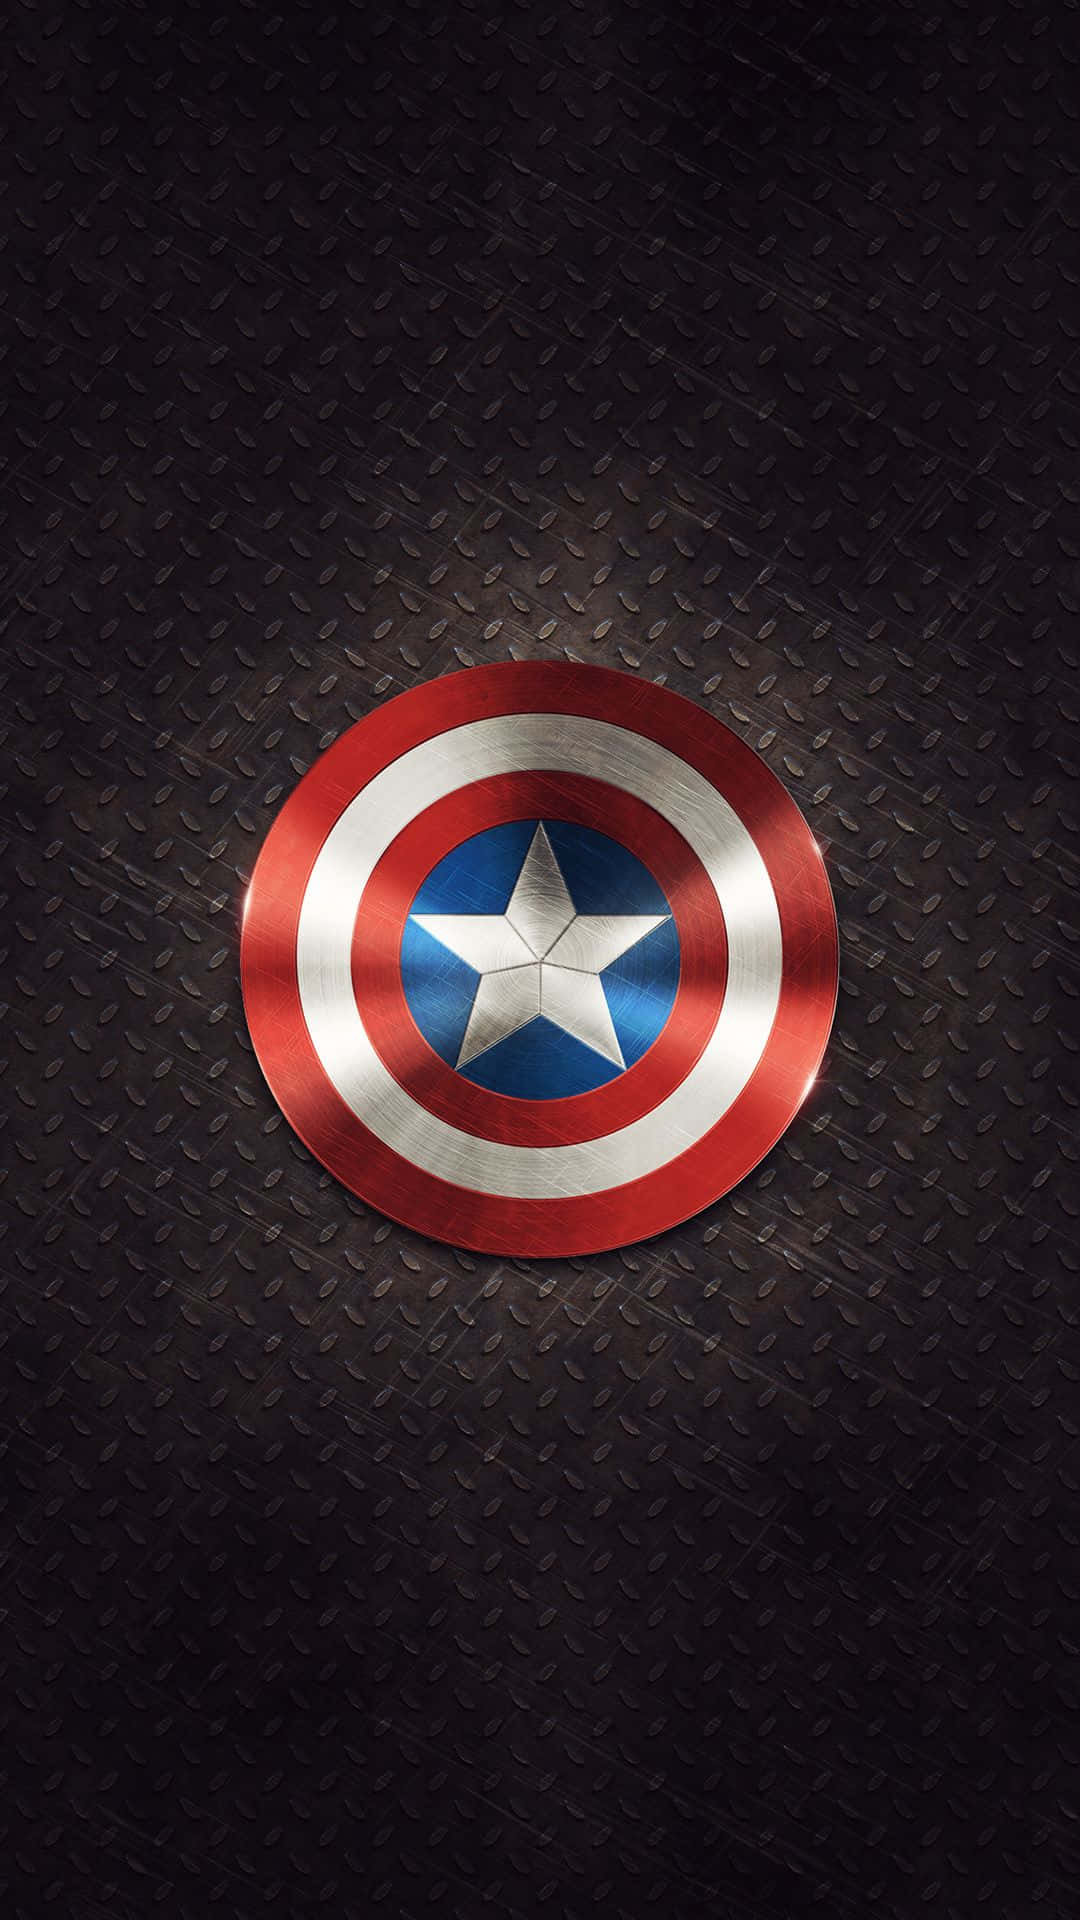 The Vigilant Hero - Best Captain America